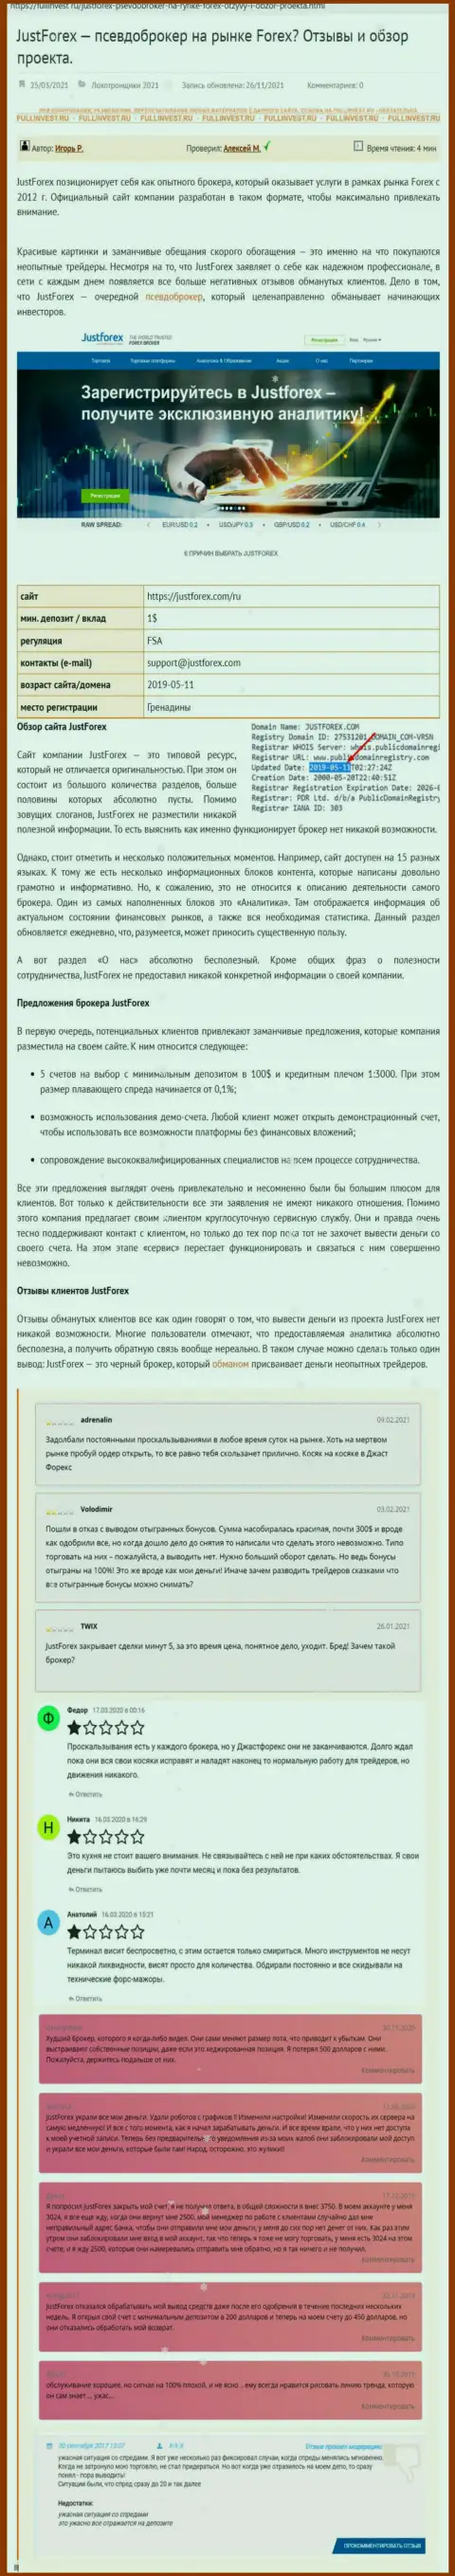 Условия сотрудничества от JustForex или как зарабатывают интернет-мошенники (обзор деятельности компании)